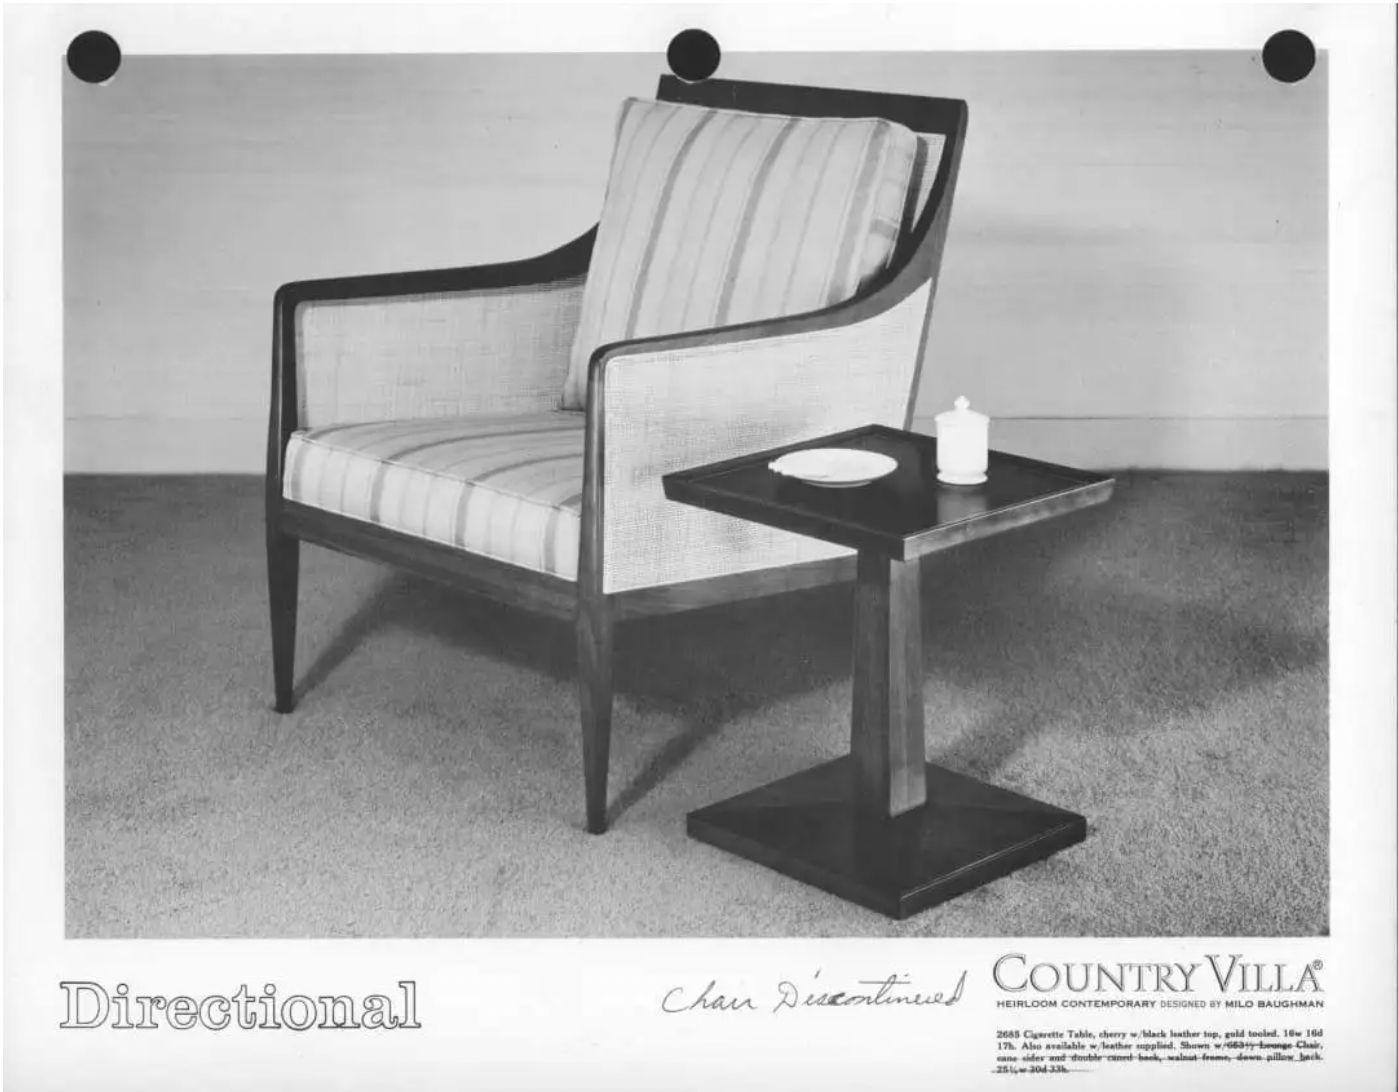 Erleben Sie die zeitlose Anziehungskraft des modernen Designs der Jahrhundertmitte mit diesem ikonischen Paar Loungesessel, die ursprünglich von Milo Baughman für die Country Village Collection'S von Milo in den 1950er Jahren entworfen wurden. Diese